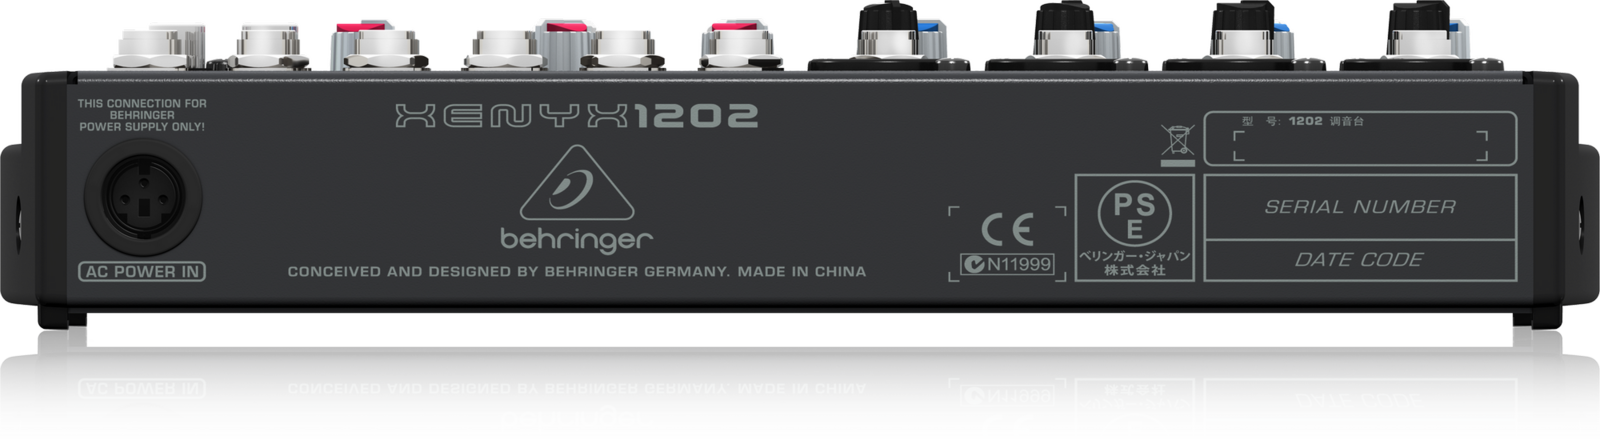 Behringer XENYX 1202 Mixer